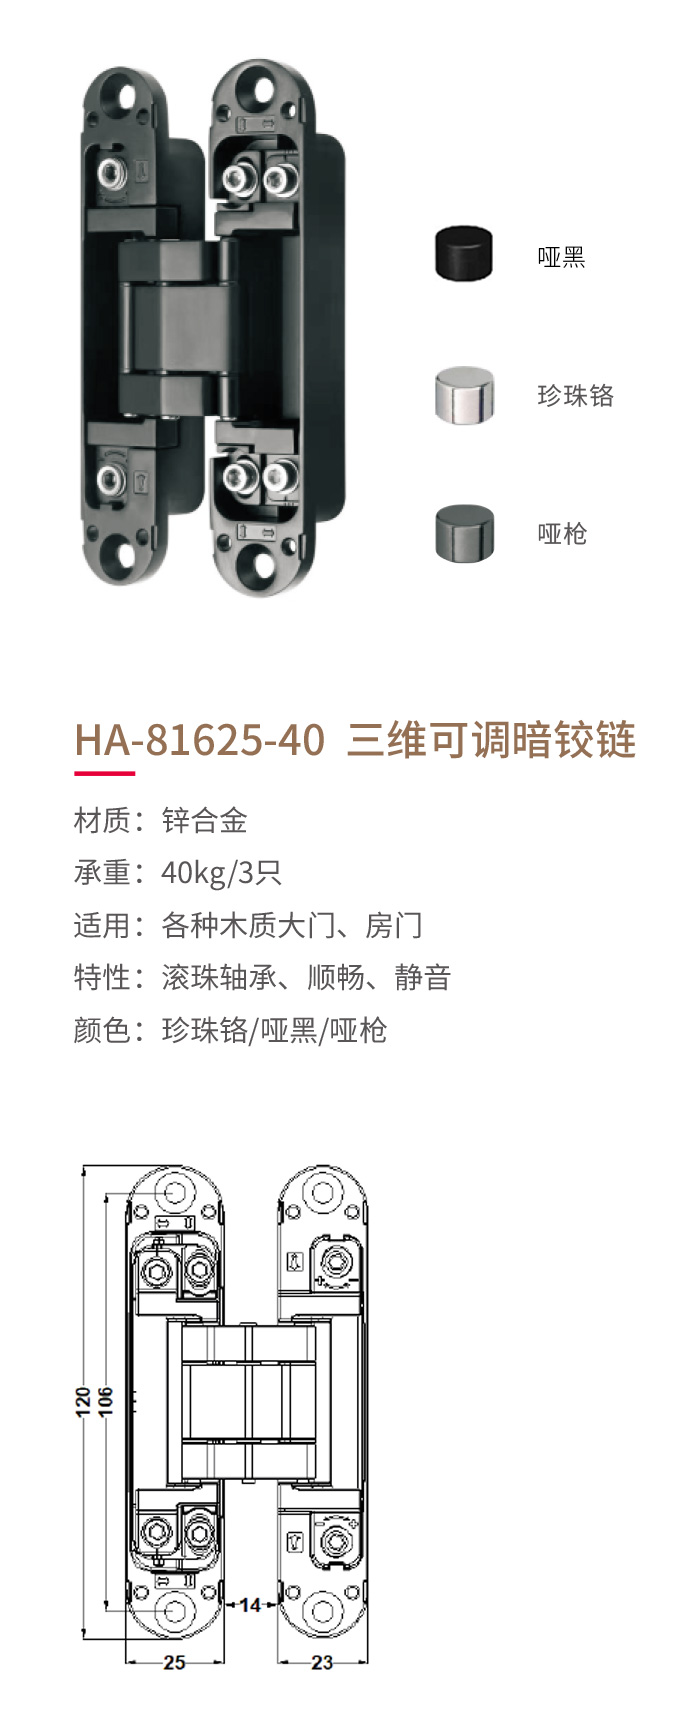 HA-81625-40-三維可調暗鉸鏈-1.jpg